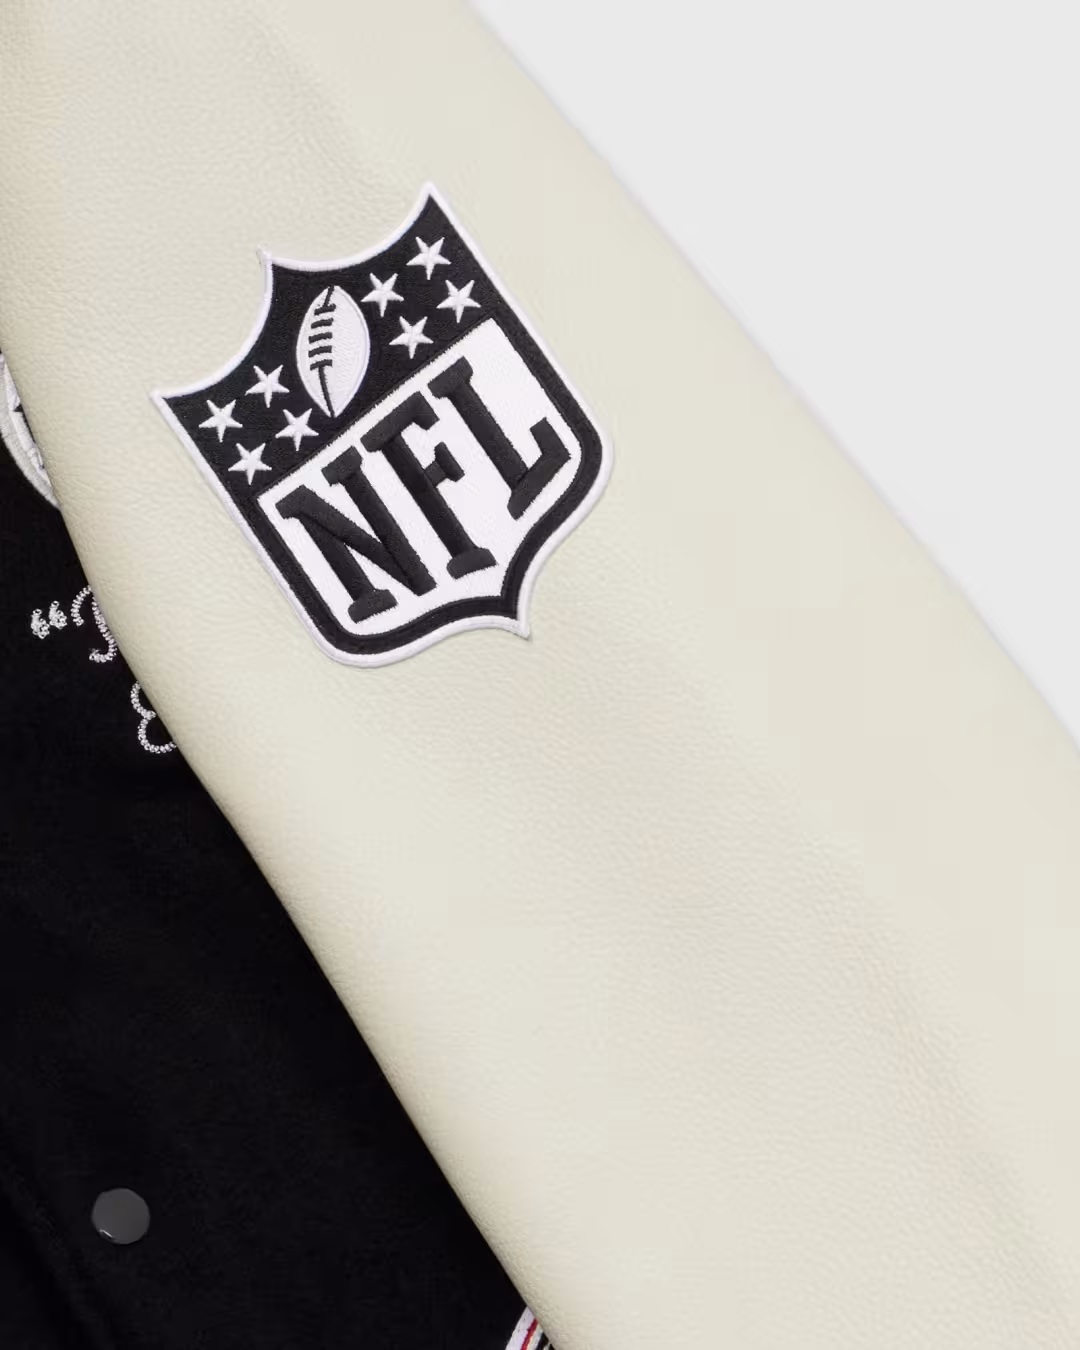 OVO x NFL Atlanta Falcons Varsity Jacket